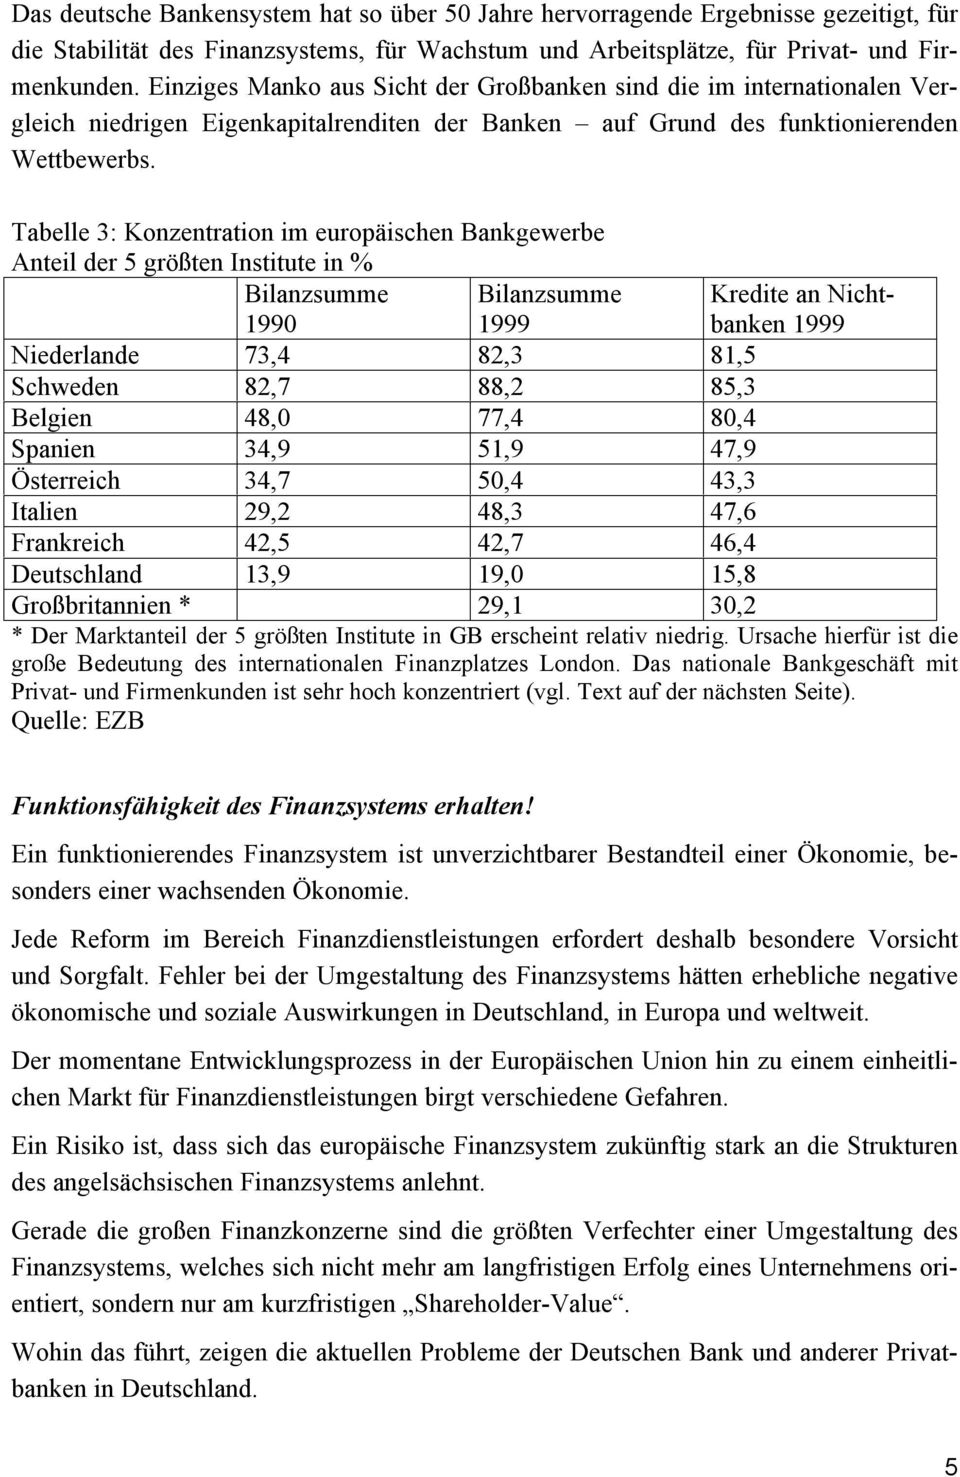 Tabelle 3: Konzentration im europäischen Bankgewerbe Anteil der 5 größten Institute in % Bilanzsumme 1990 Bilanzsumme 1999 Kredite an Nichtbanken 1999 Niederlande 73,4 82,3 81,5 Schweden 82,7 88,2